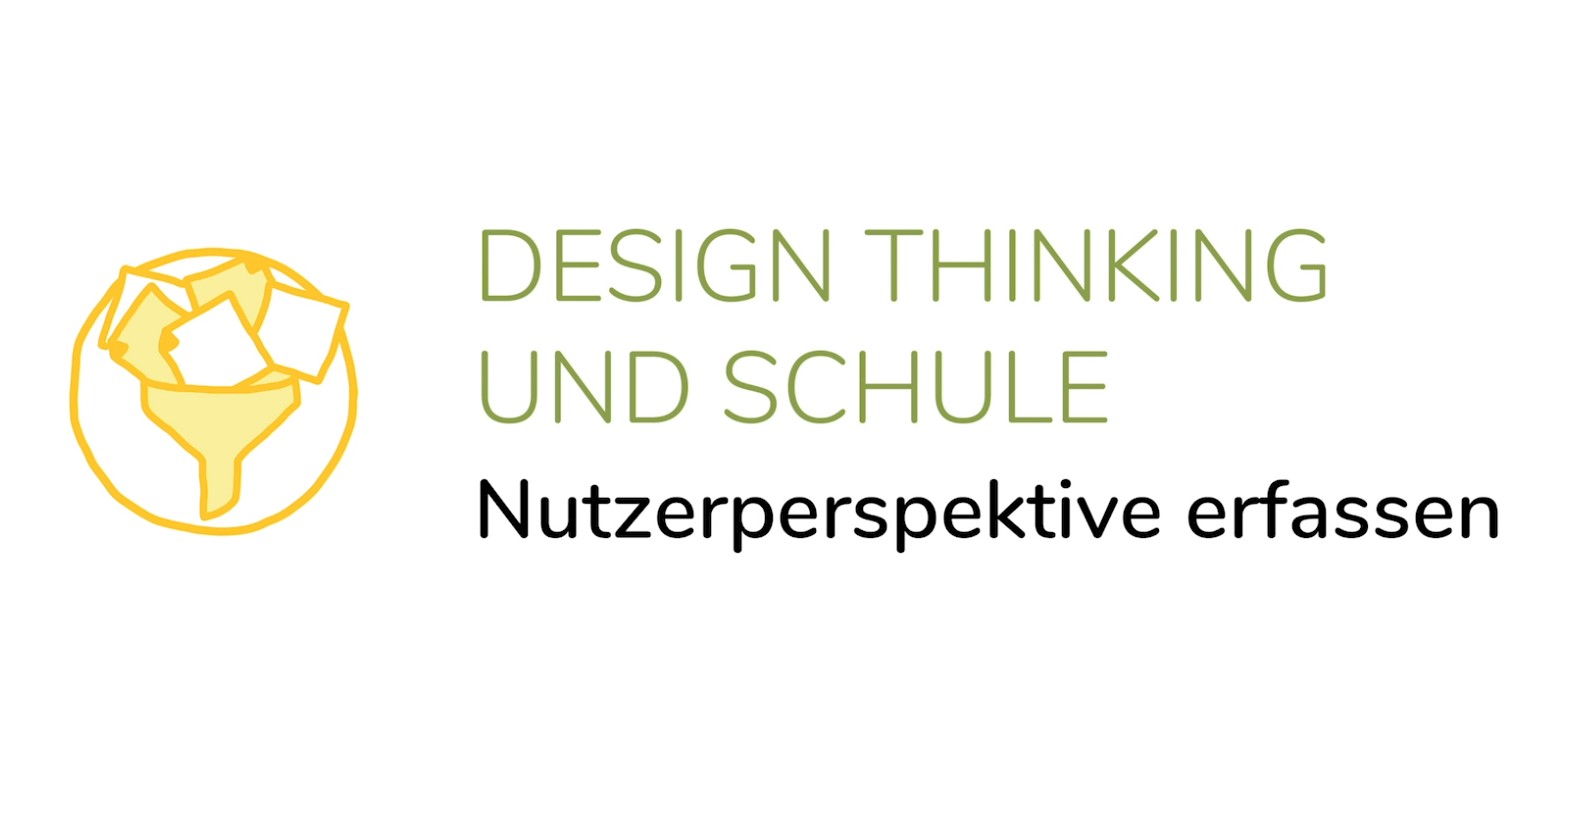 Design Thinking und Schule - Nutzerperspektive erfassen (3. Phase)